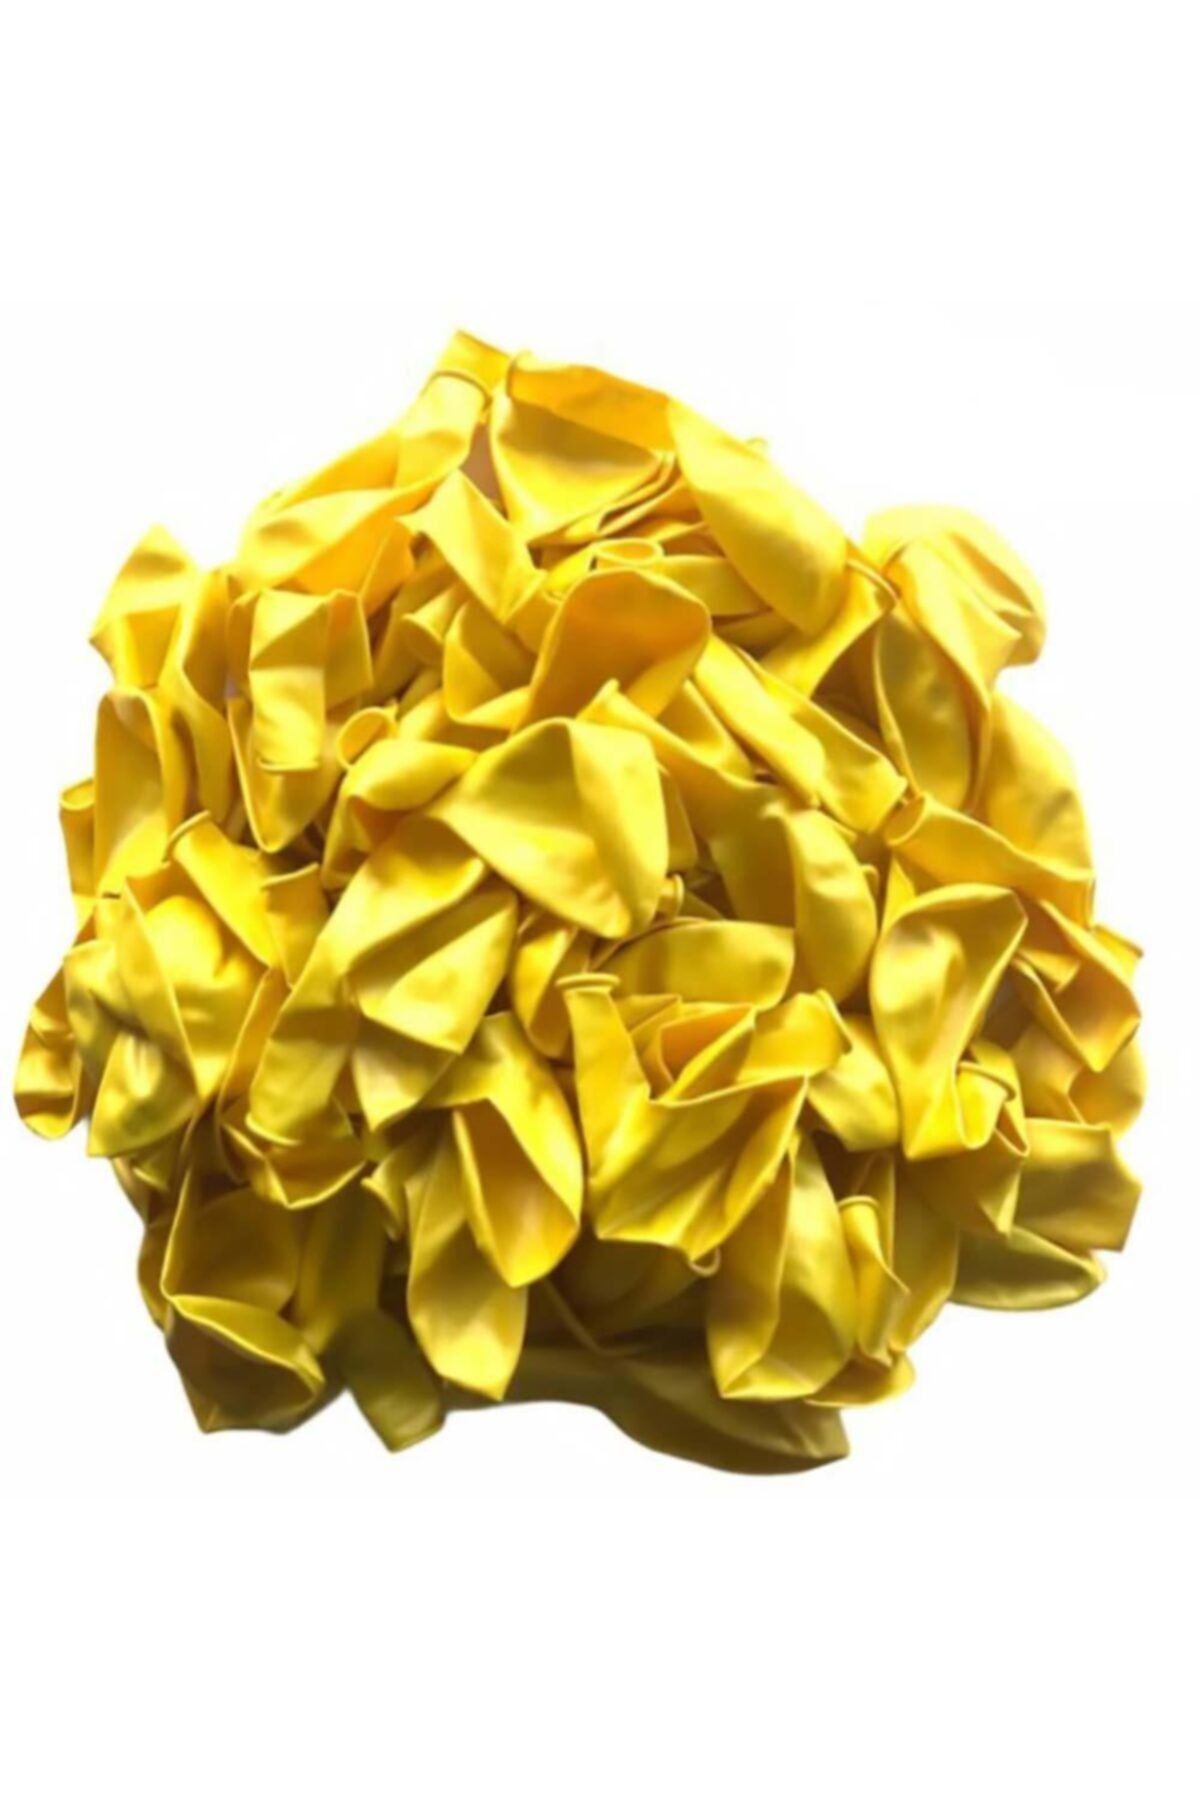 Patladı Gitti 12 Inç Metalik Sarı Balon 10 Adet